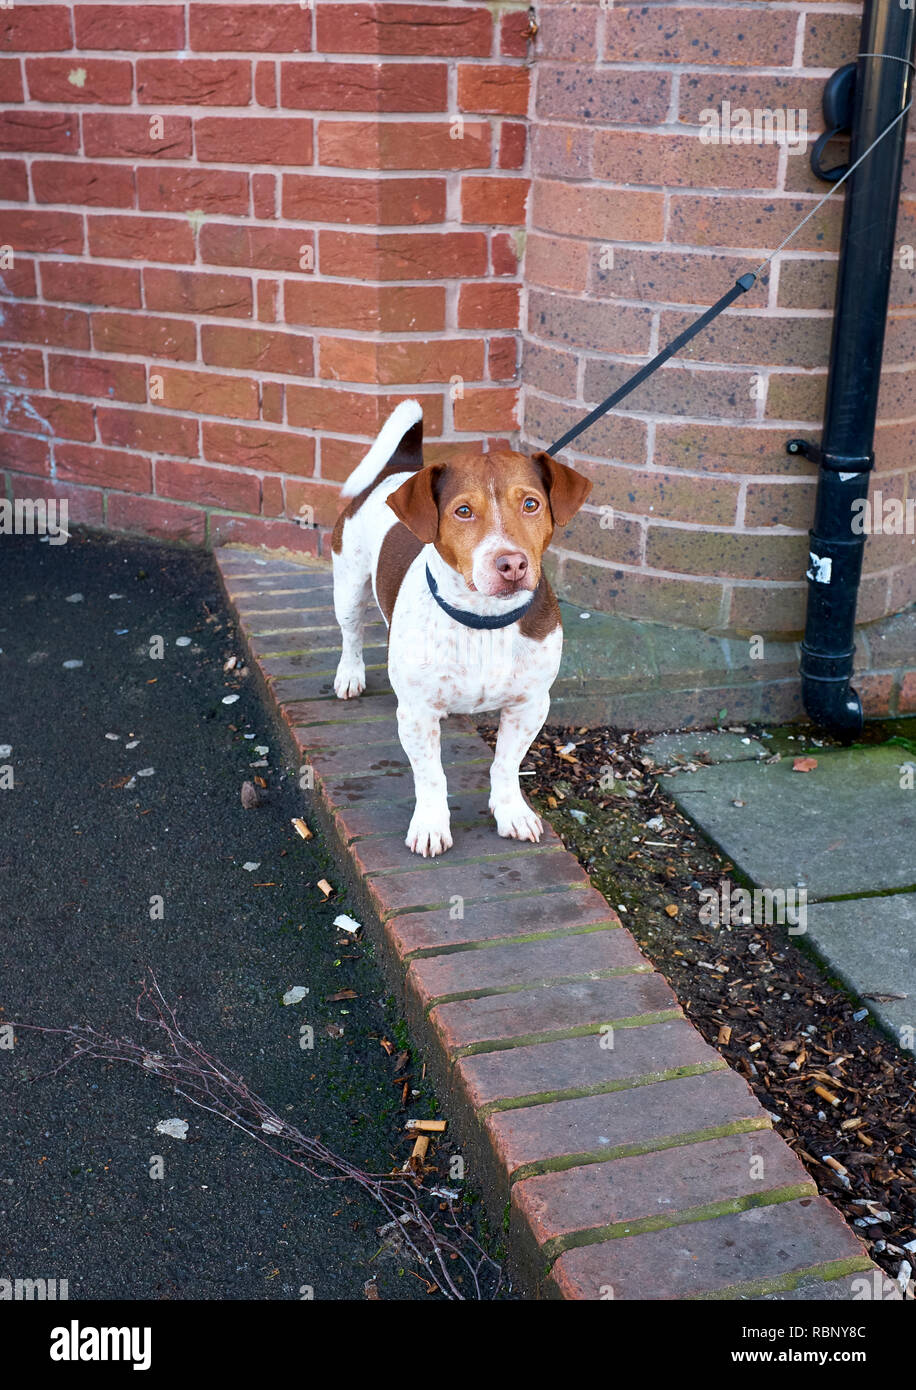 Un Jack Russell Terrier de pie en una fila de ladrillos que forman parte de un pavimento sobre su propia con su plomo atado a un tubo descendente Foto de stock